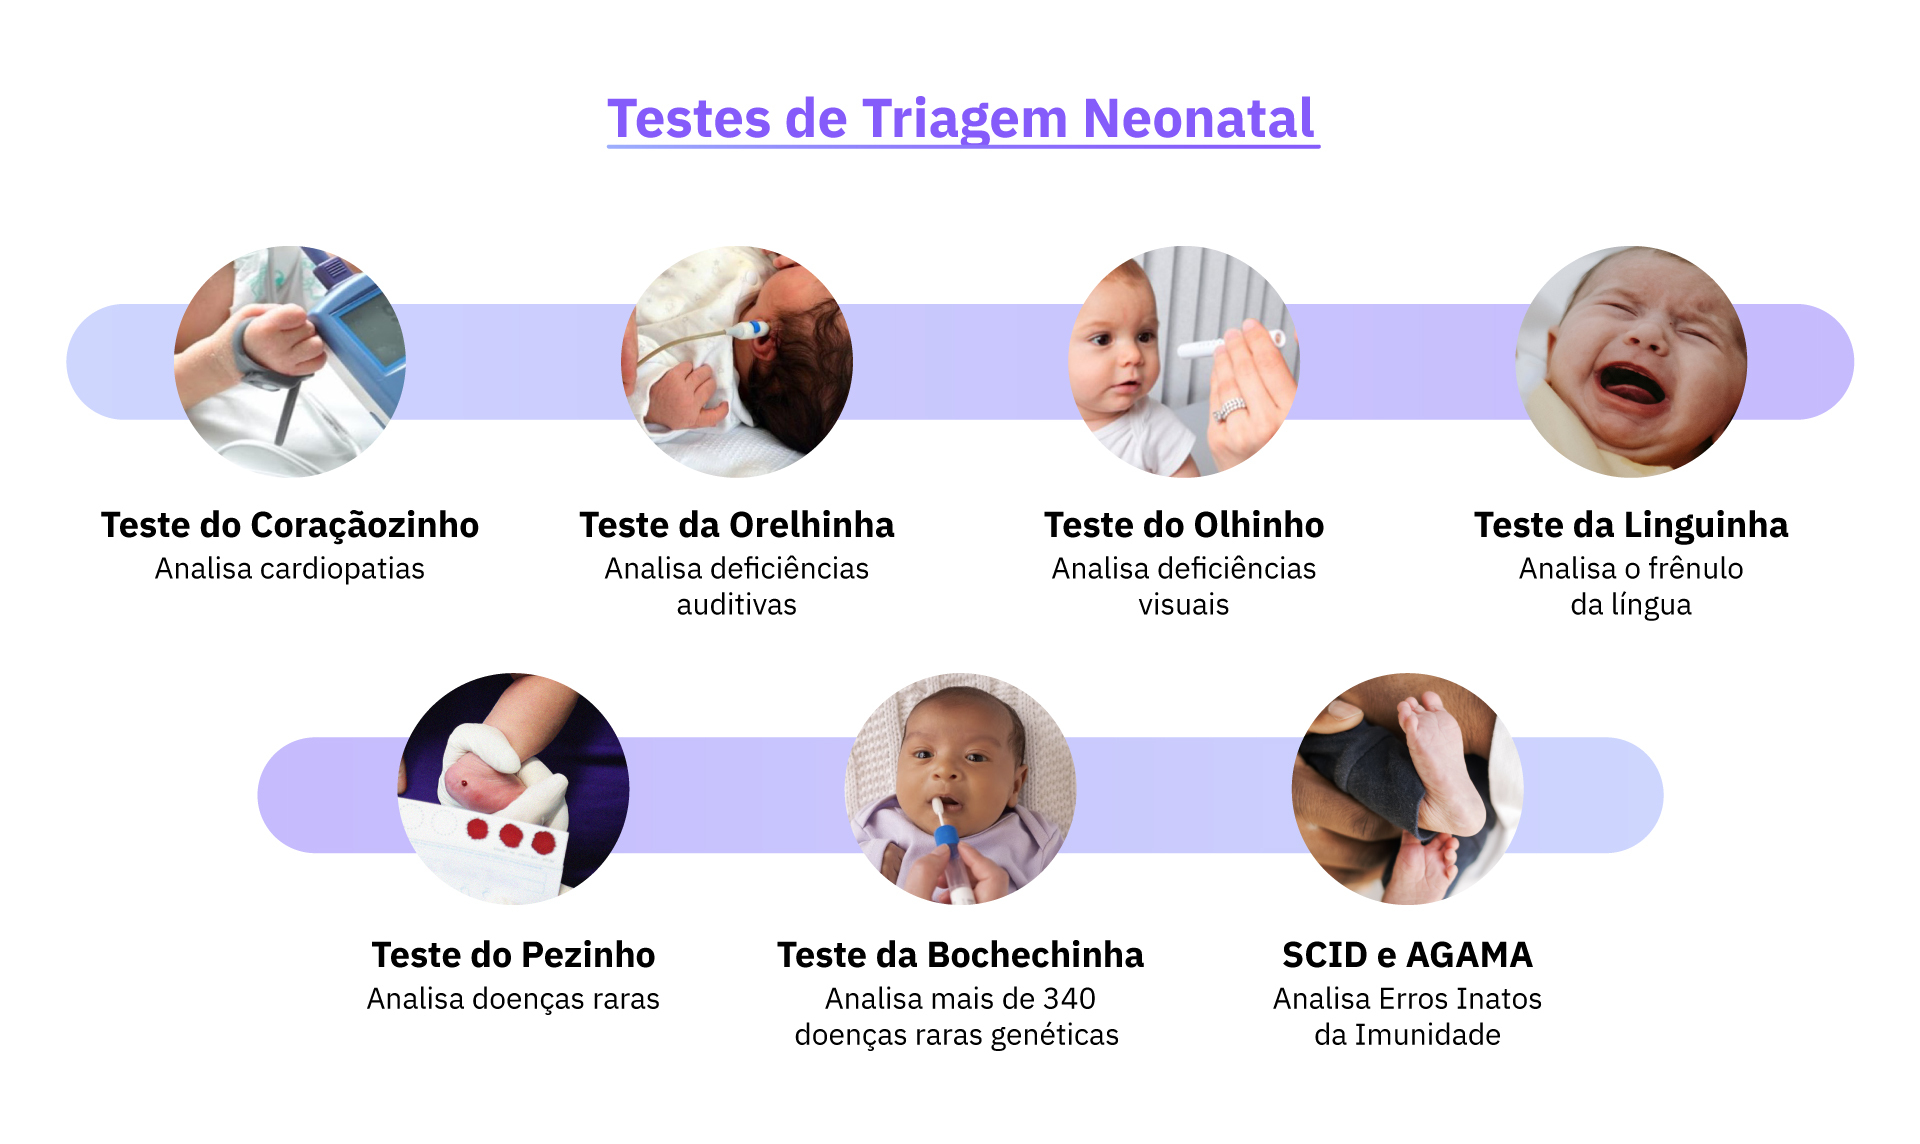 Lista dos principais testes de triagem neonatal obrigatórios e complementares